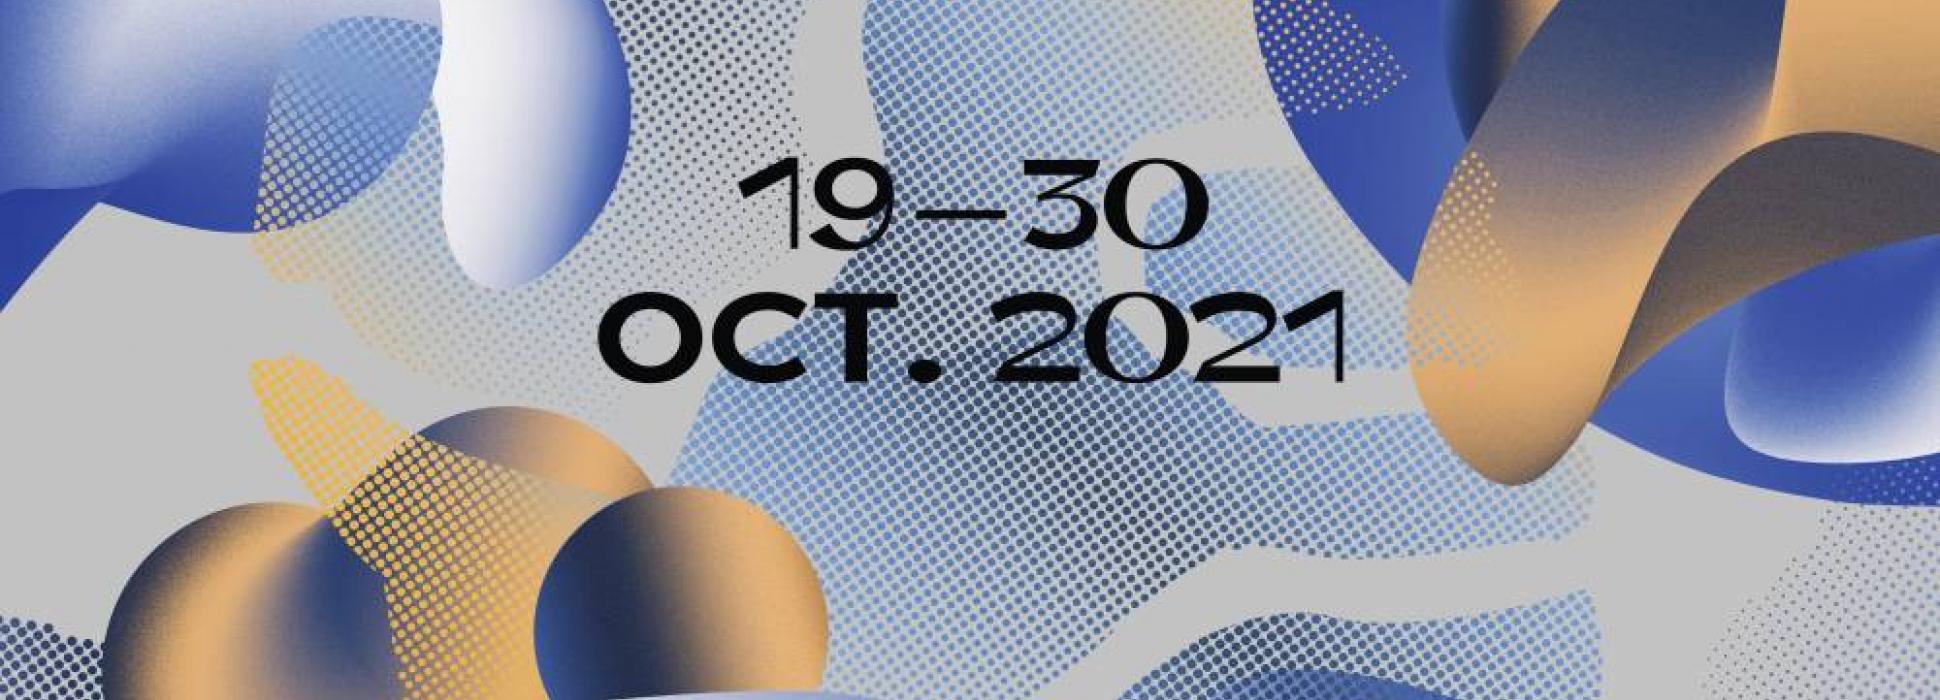 Du 19 au 30 octobre 2021, la fête électro Nördik Impakt fait son grand retour sous le nom « NDK »